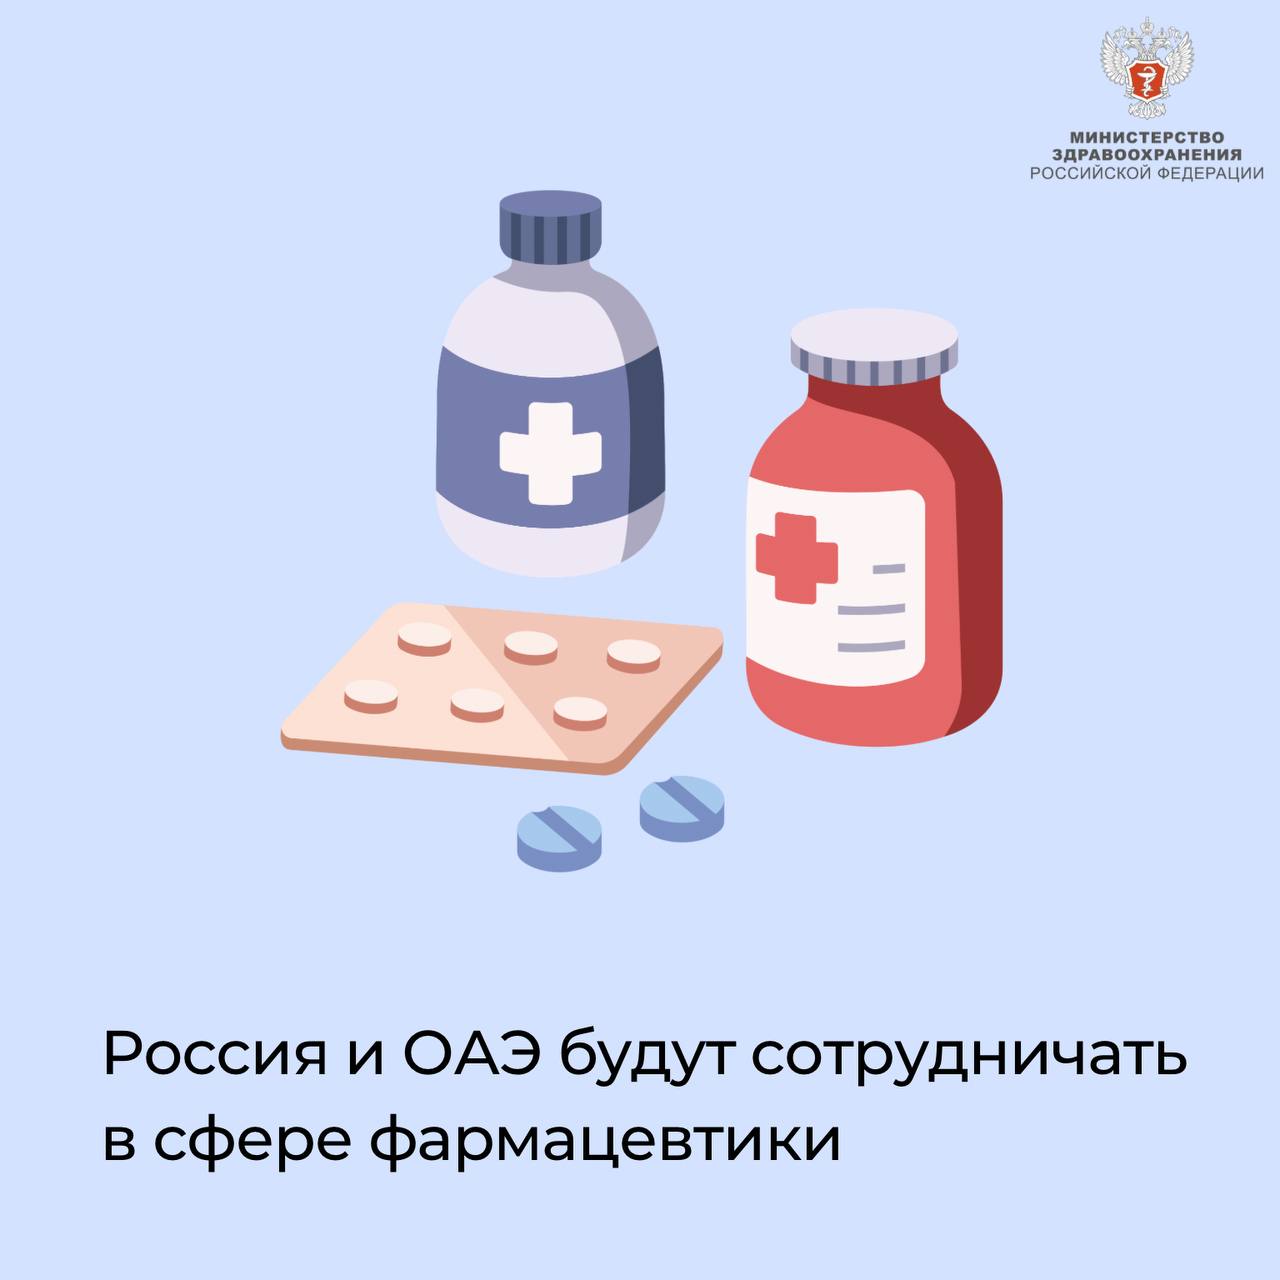 Россия и ОАЭ будут сотрудничать в сфере фармацевтики